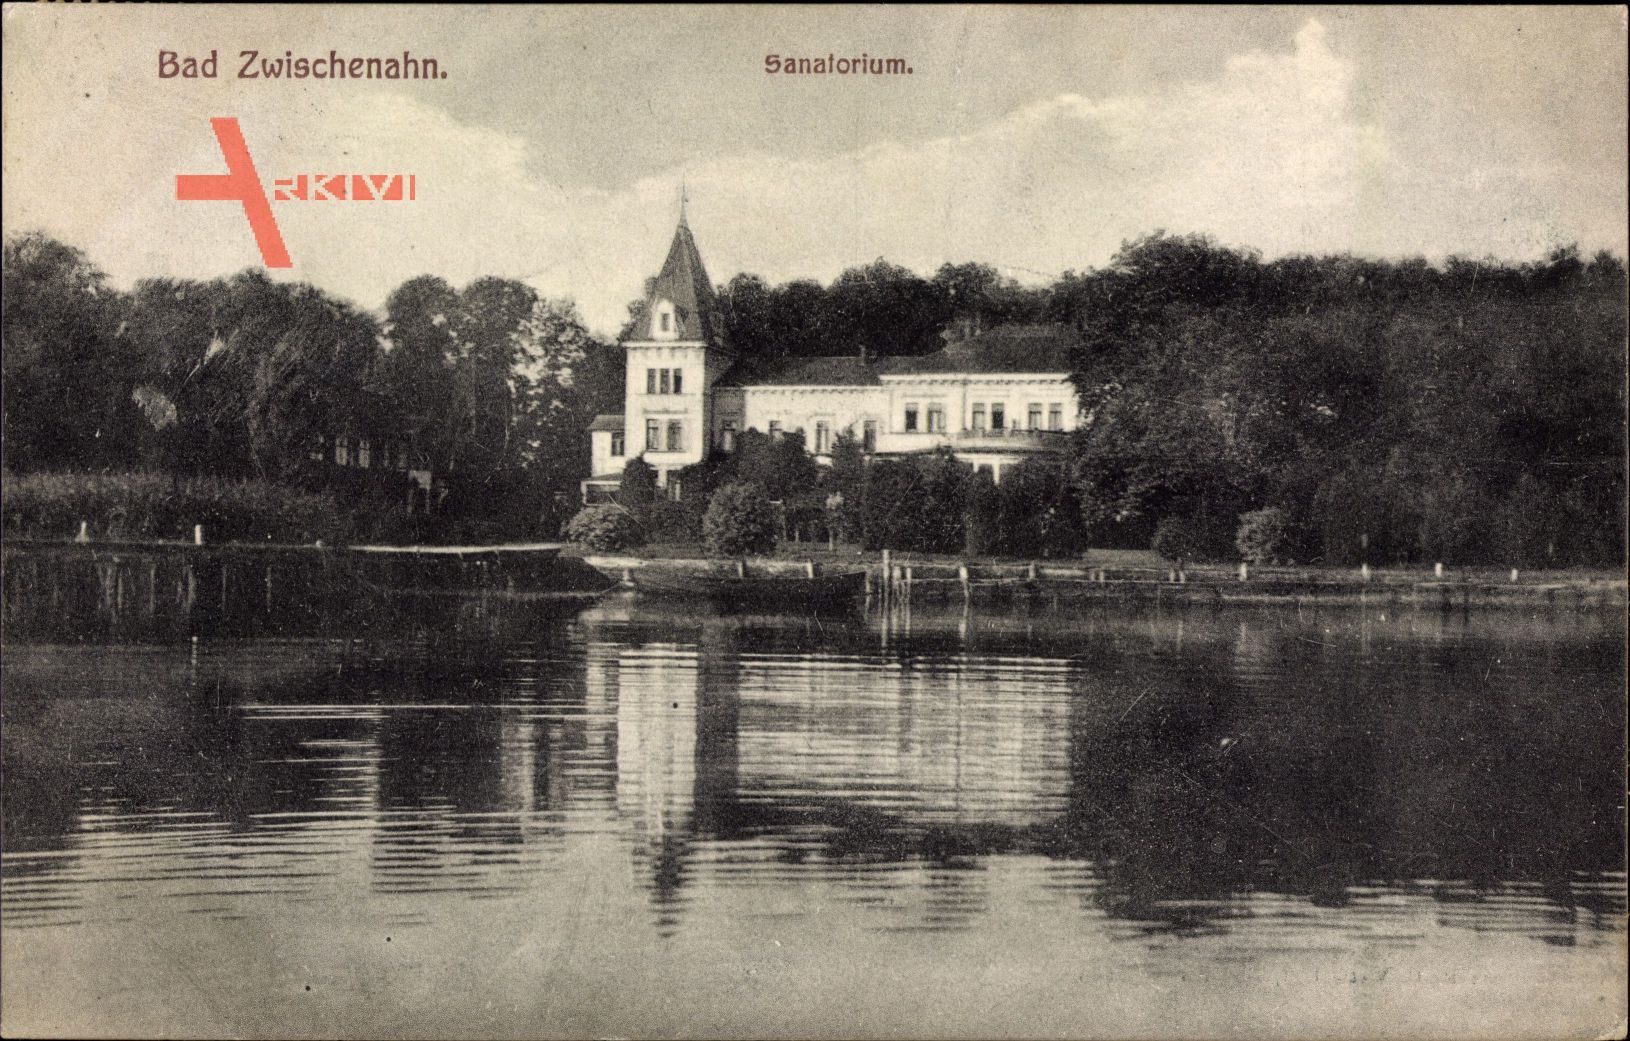 Bad Zwischenahn, Gewässerpartie mit Blick auf das Sanatorium